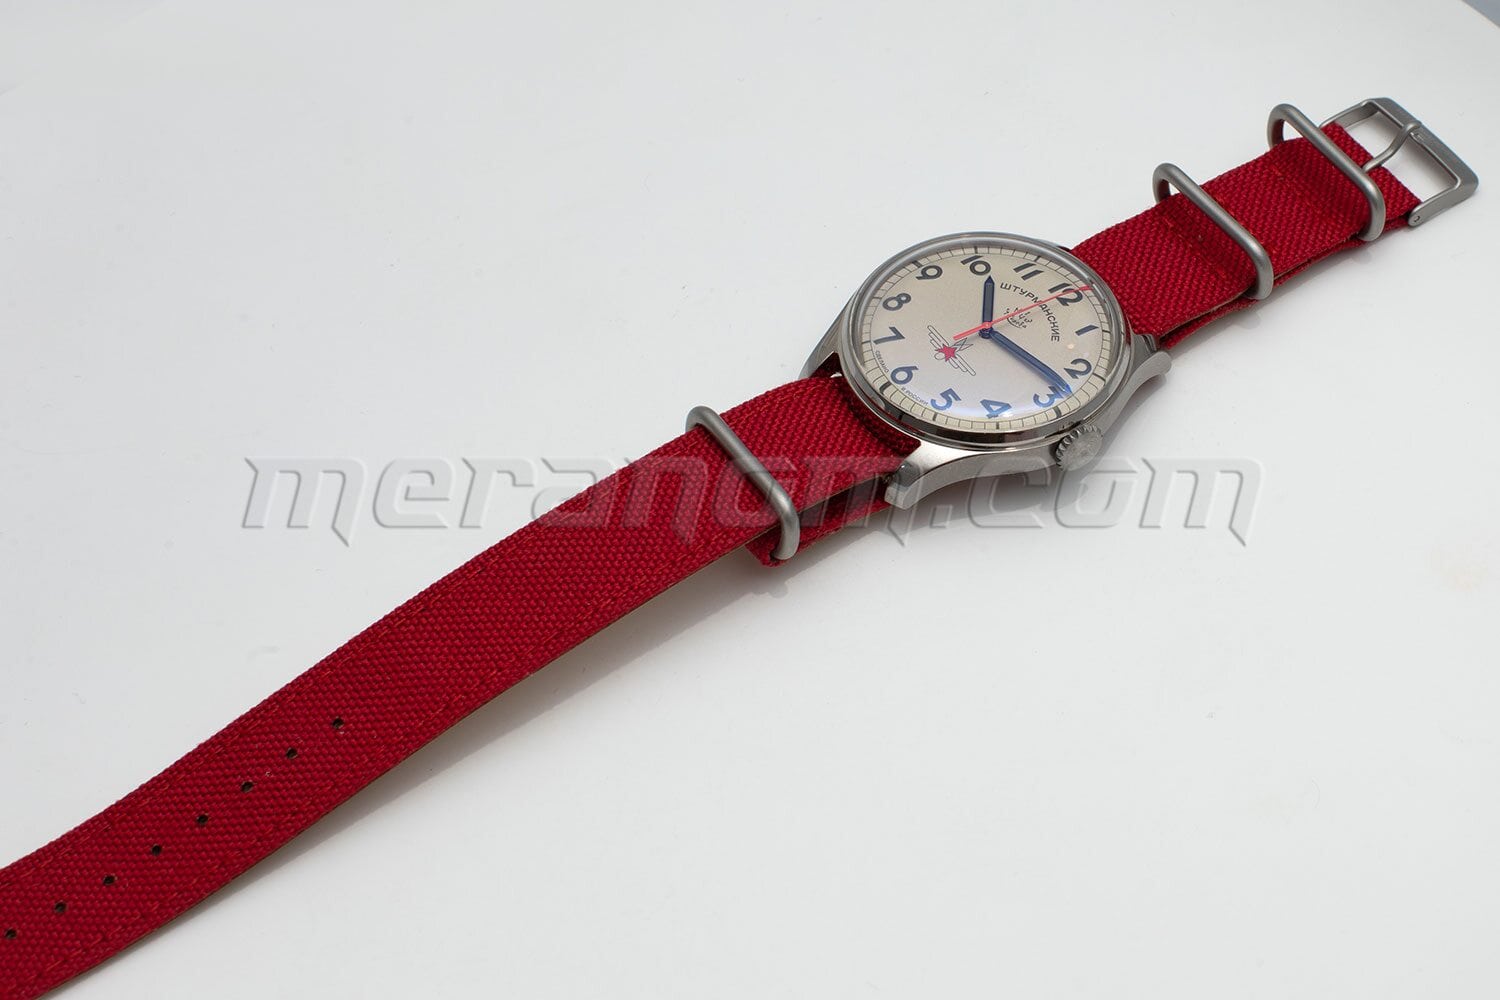 Sturmanskie watch 2609/3747200 Gagarin Titanium